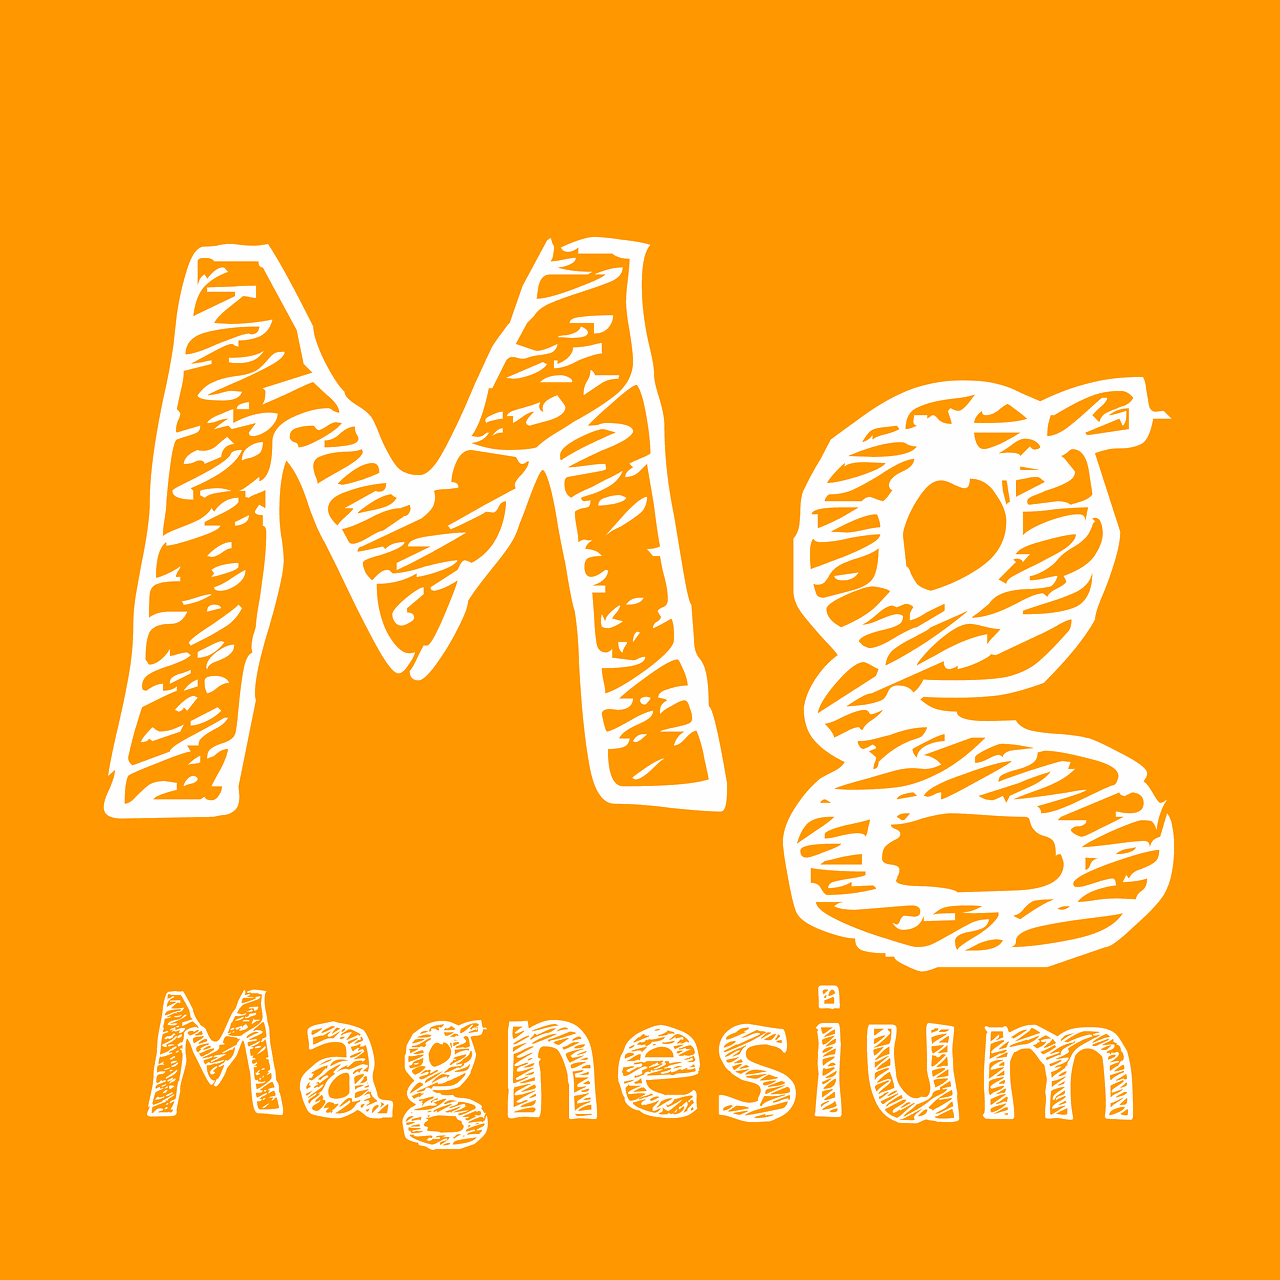 Magnsium